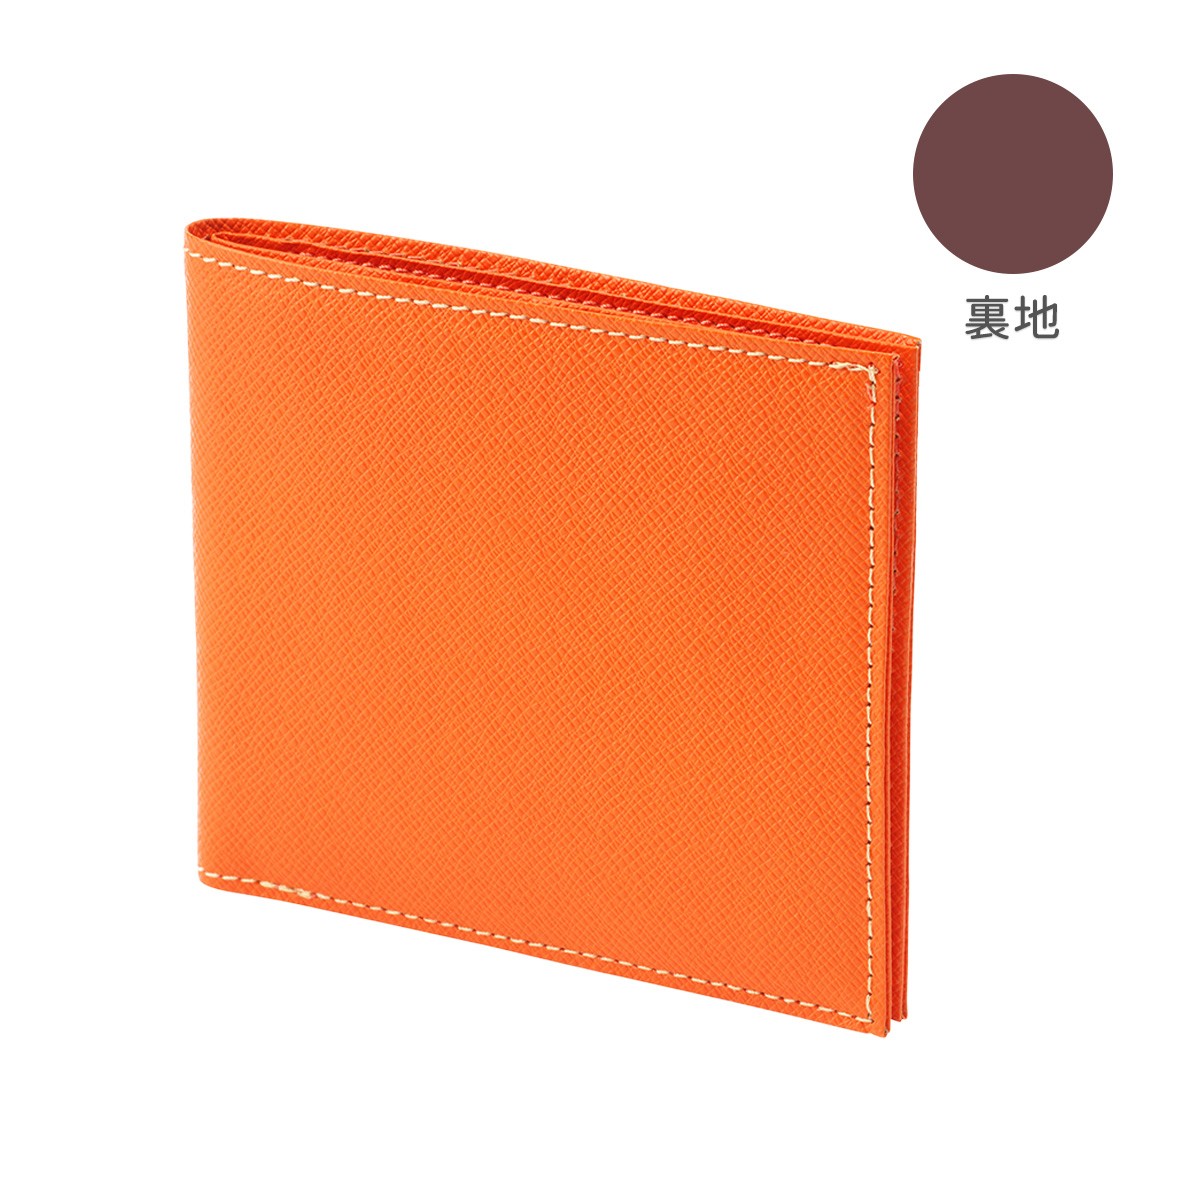 レディースファッション 財布、帽子、ファッション小物 FRUH（フリュー）スマート ショート ウォレット‐薄型 超薄 薄い 財布 